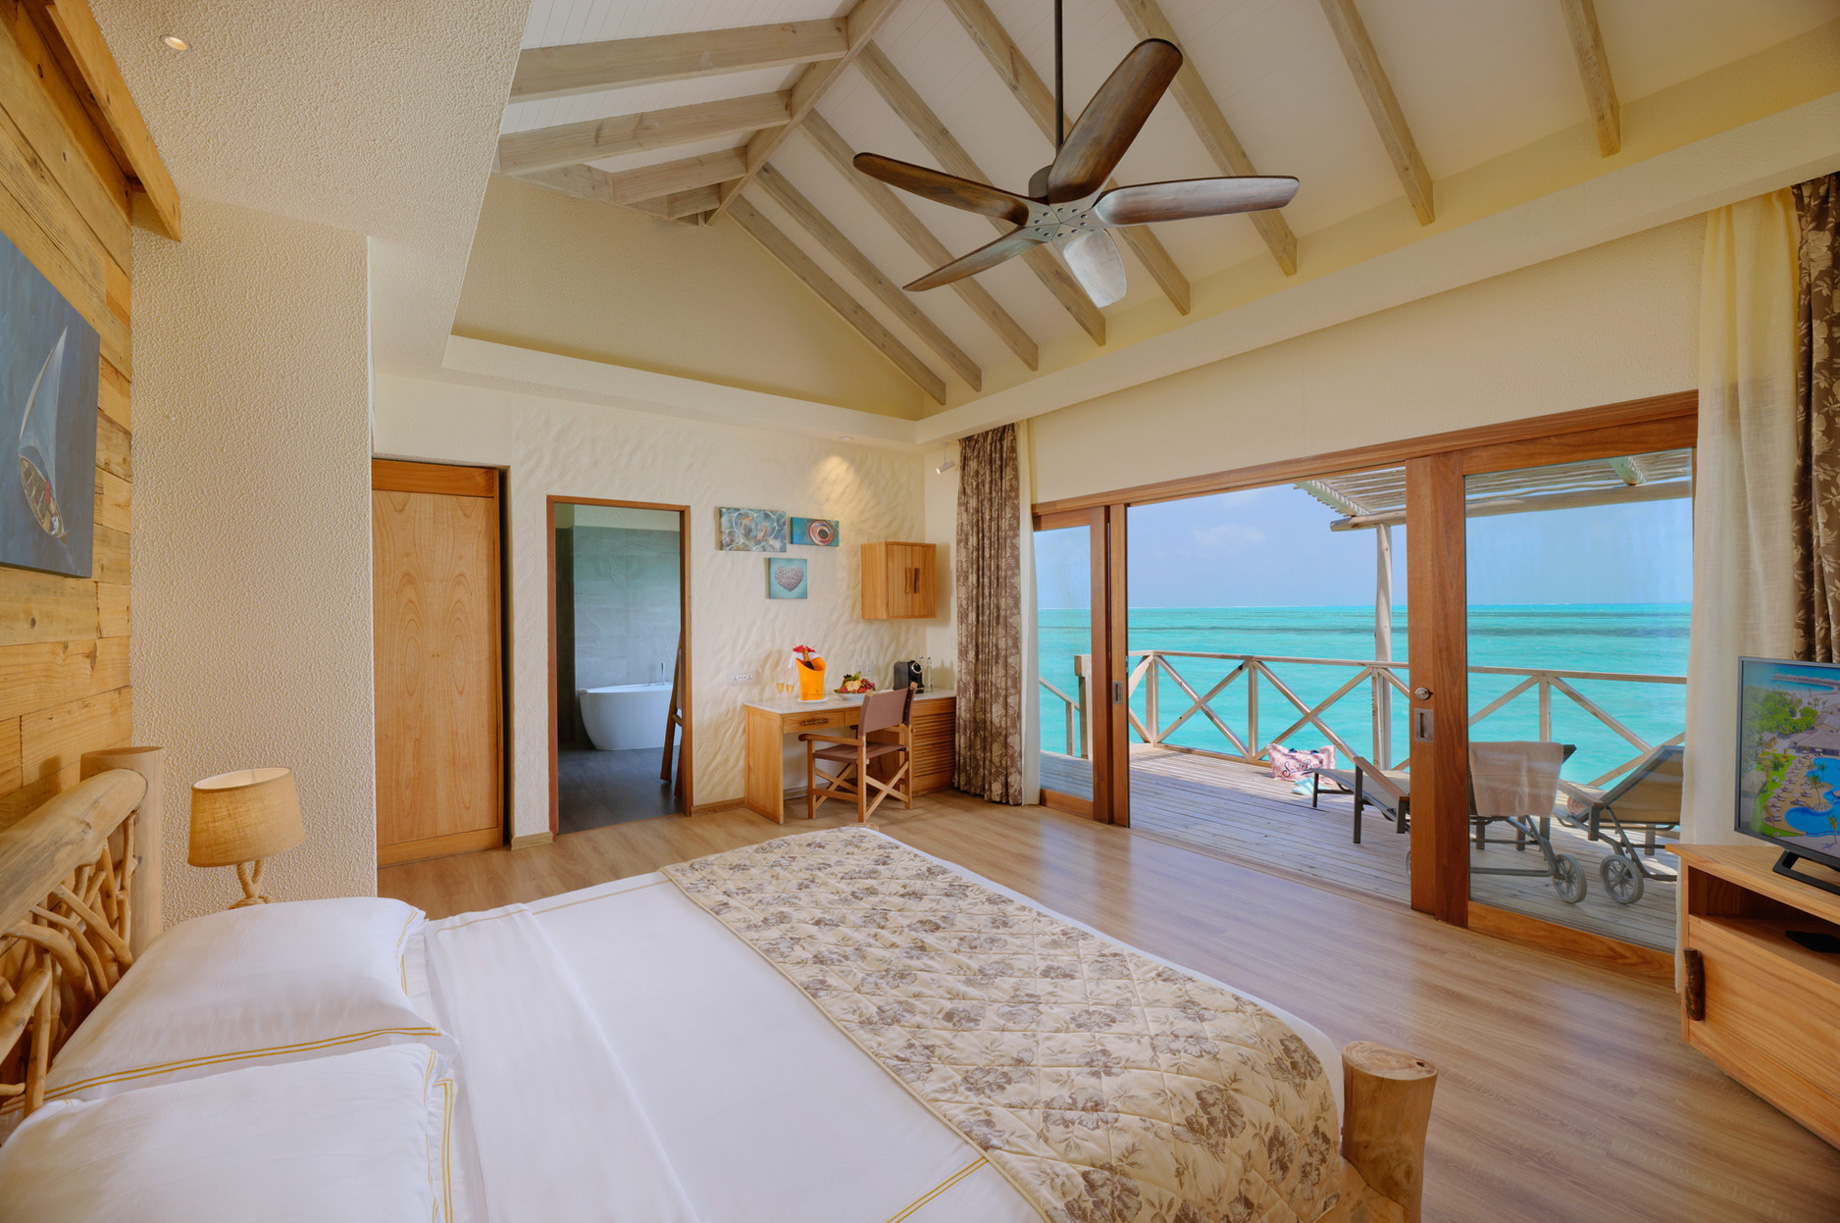 You & Me Maldives Resort – Uthurumaafaru, Raa Atoll, Maldives – Aqua Suite Interior